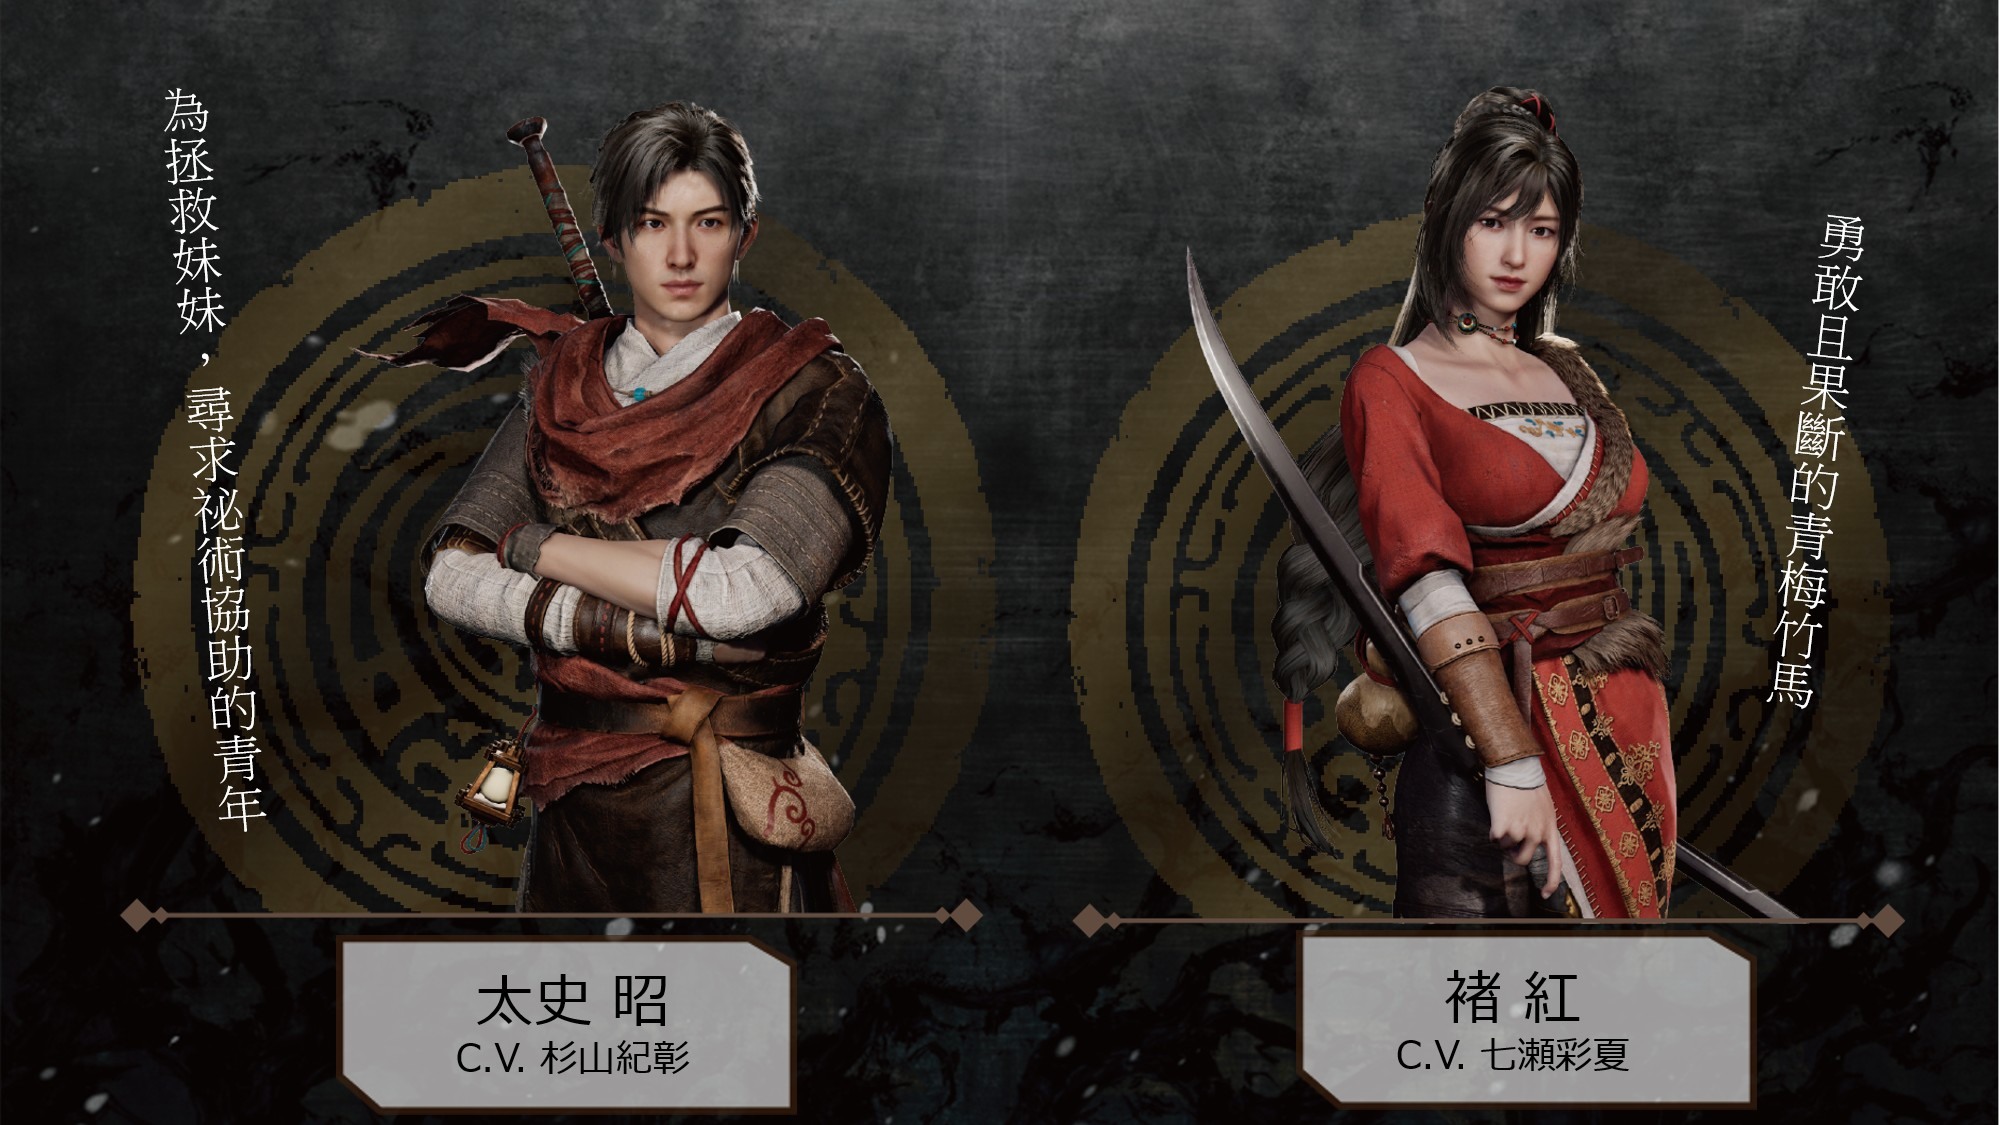 軒轅劍柒 Ps4 版即日起可免費更新追加日文語音 Xuan Yuan Sword 7 巴哈姆特